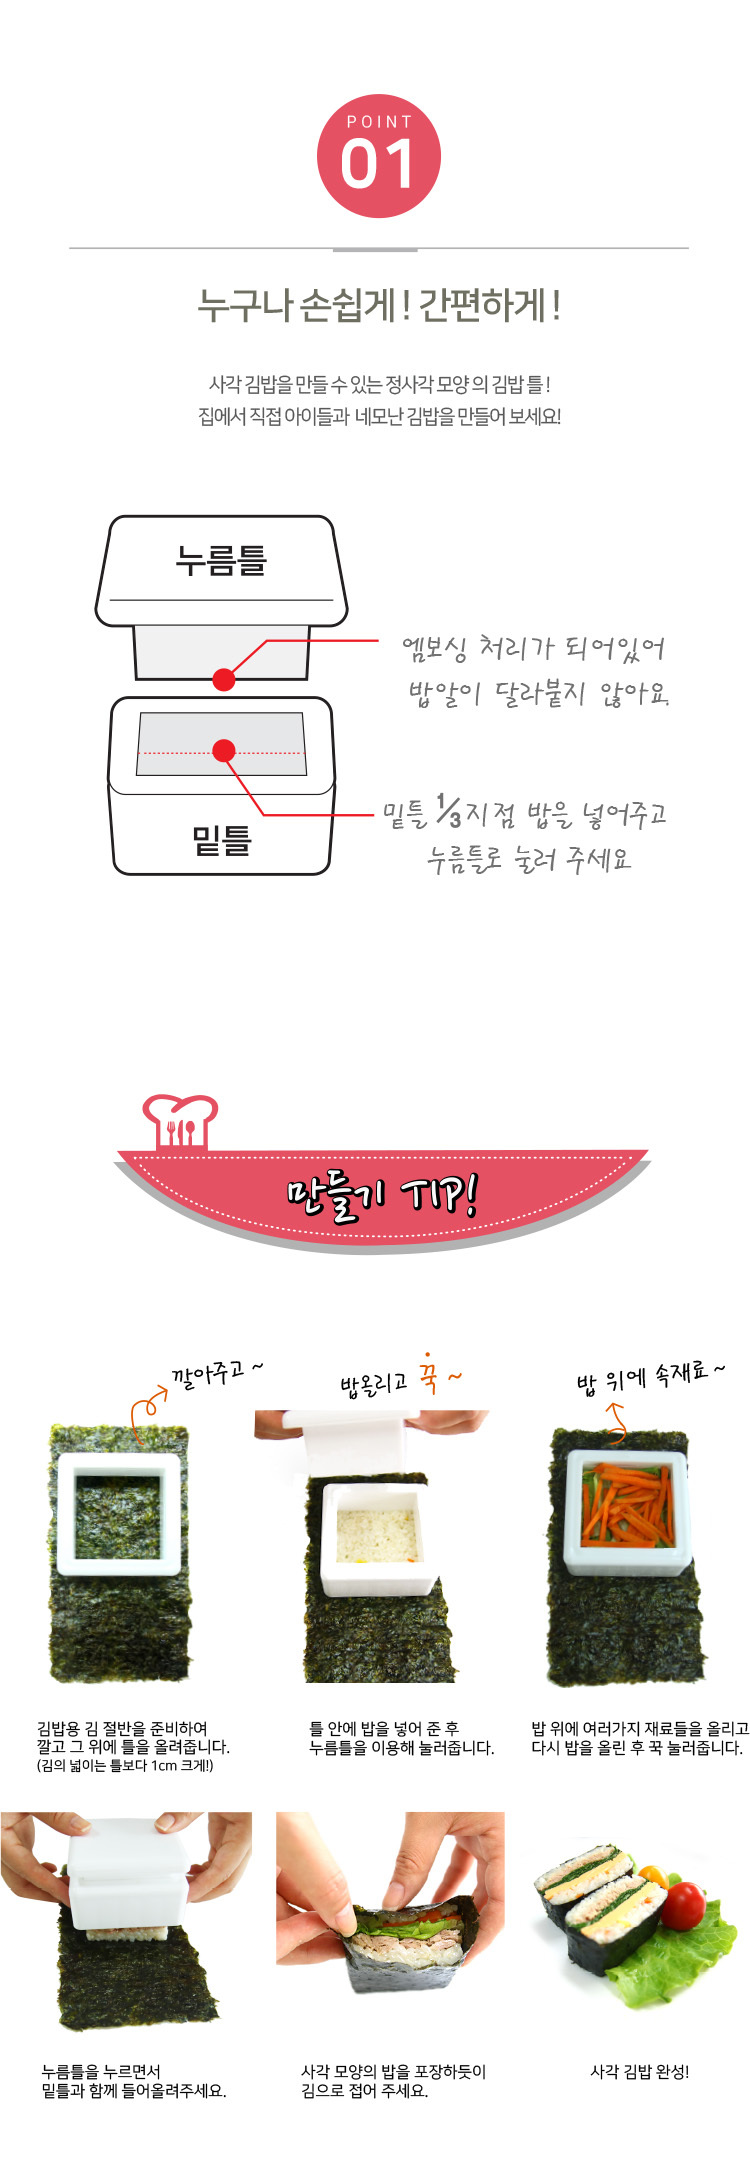 집밥 홈메이드 사각모양 김밥만들기 정사각김밥틀